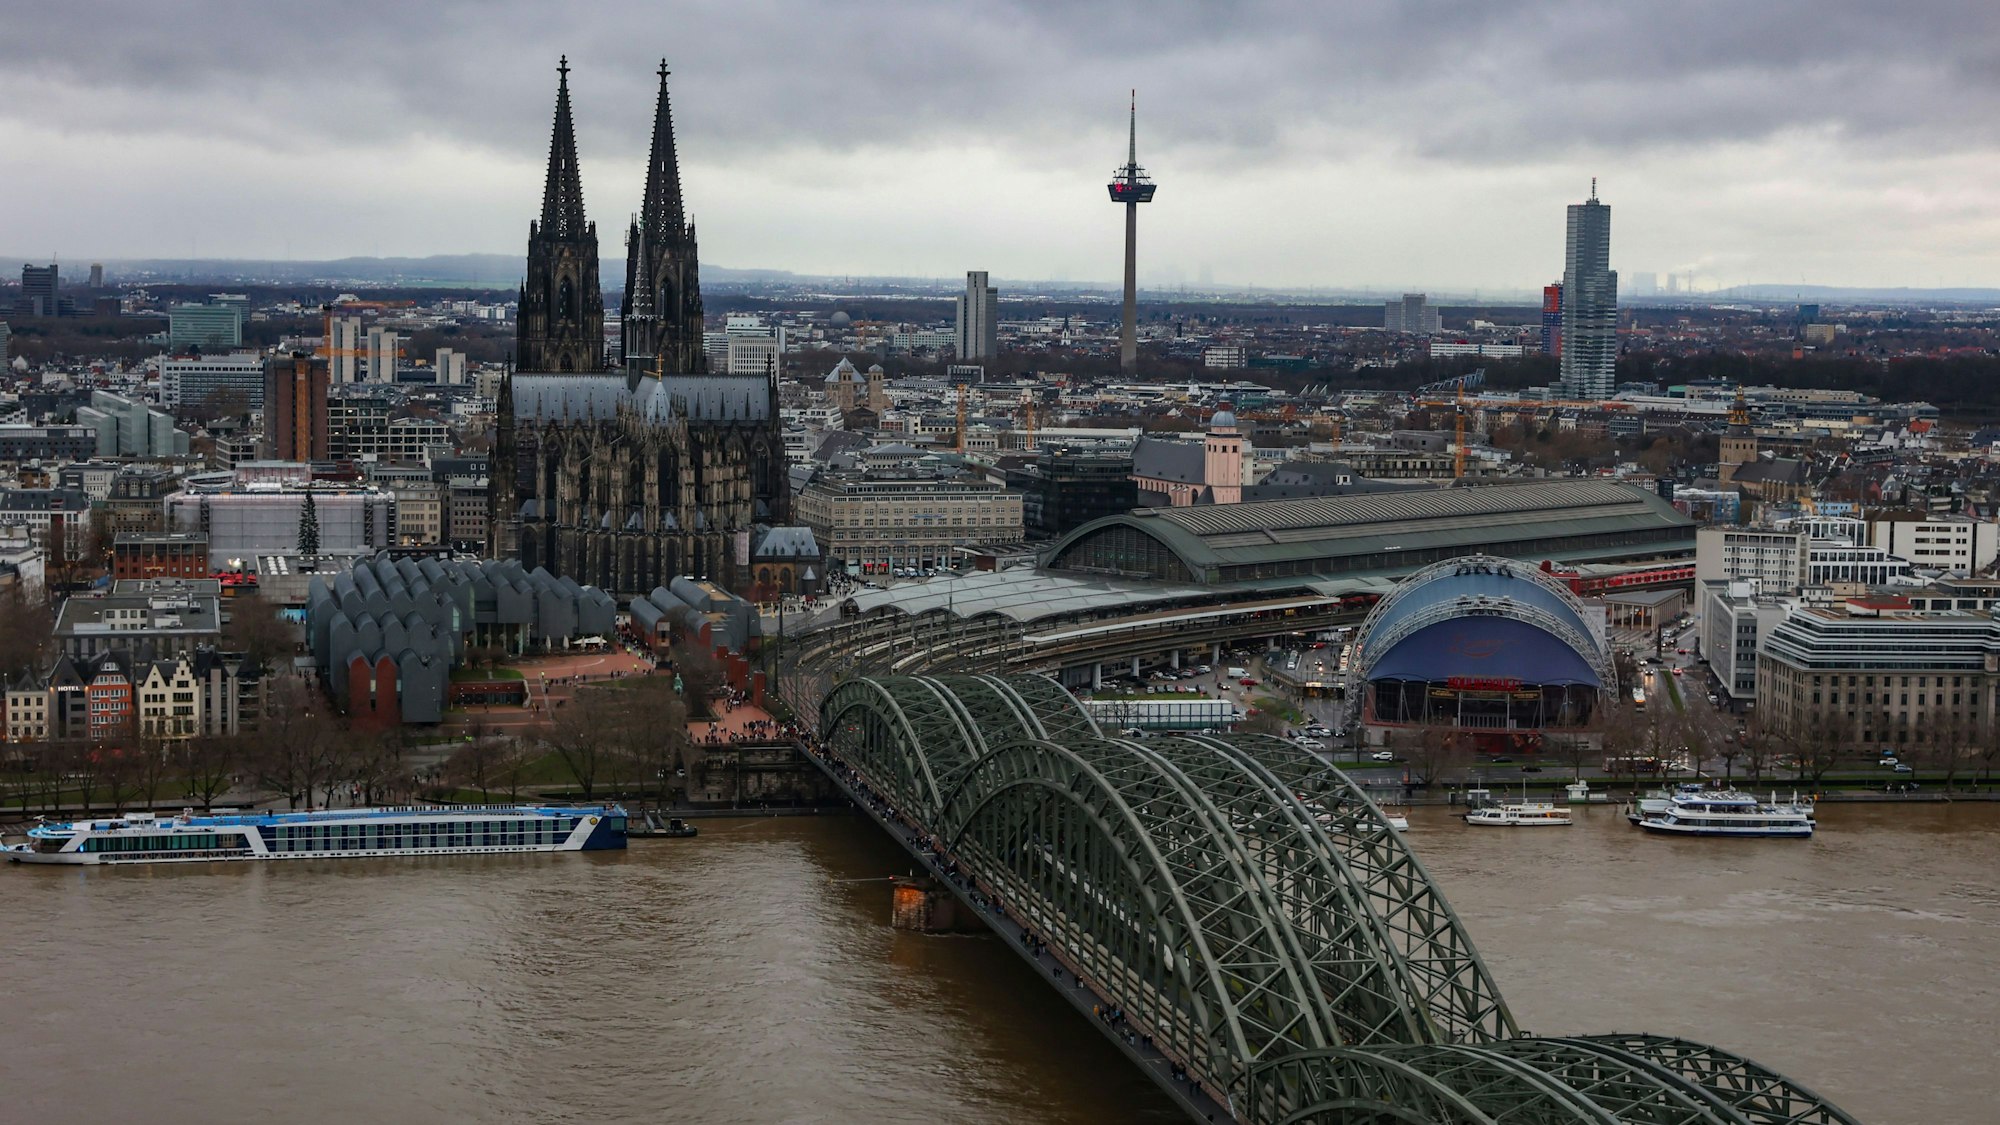 Berühmtes Stadtbild: Der Blick auf den Dom und die Hohenzollernbrücke.